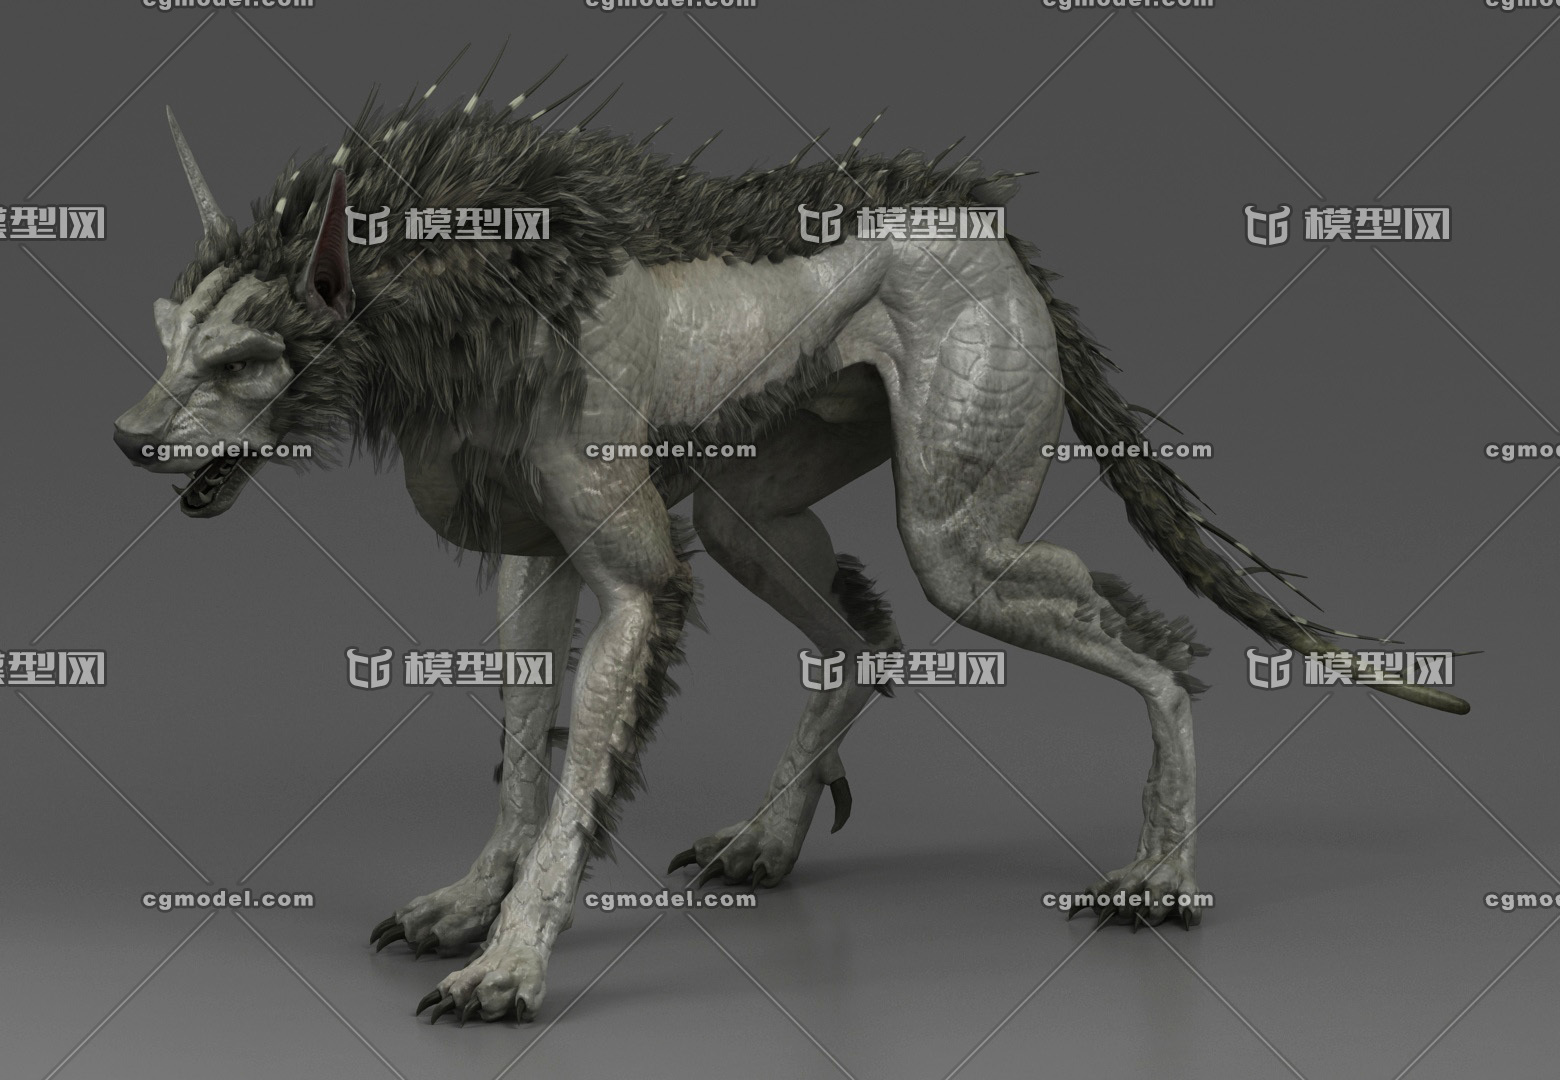 狂暴巨兽  变异飞狼  影视动画级别 带绑定 变异恶狼---无控制器